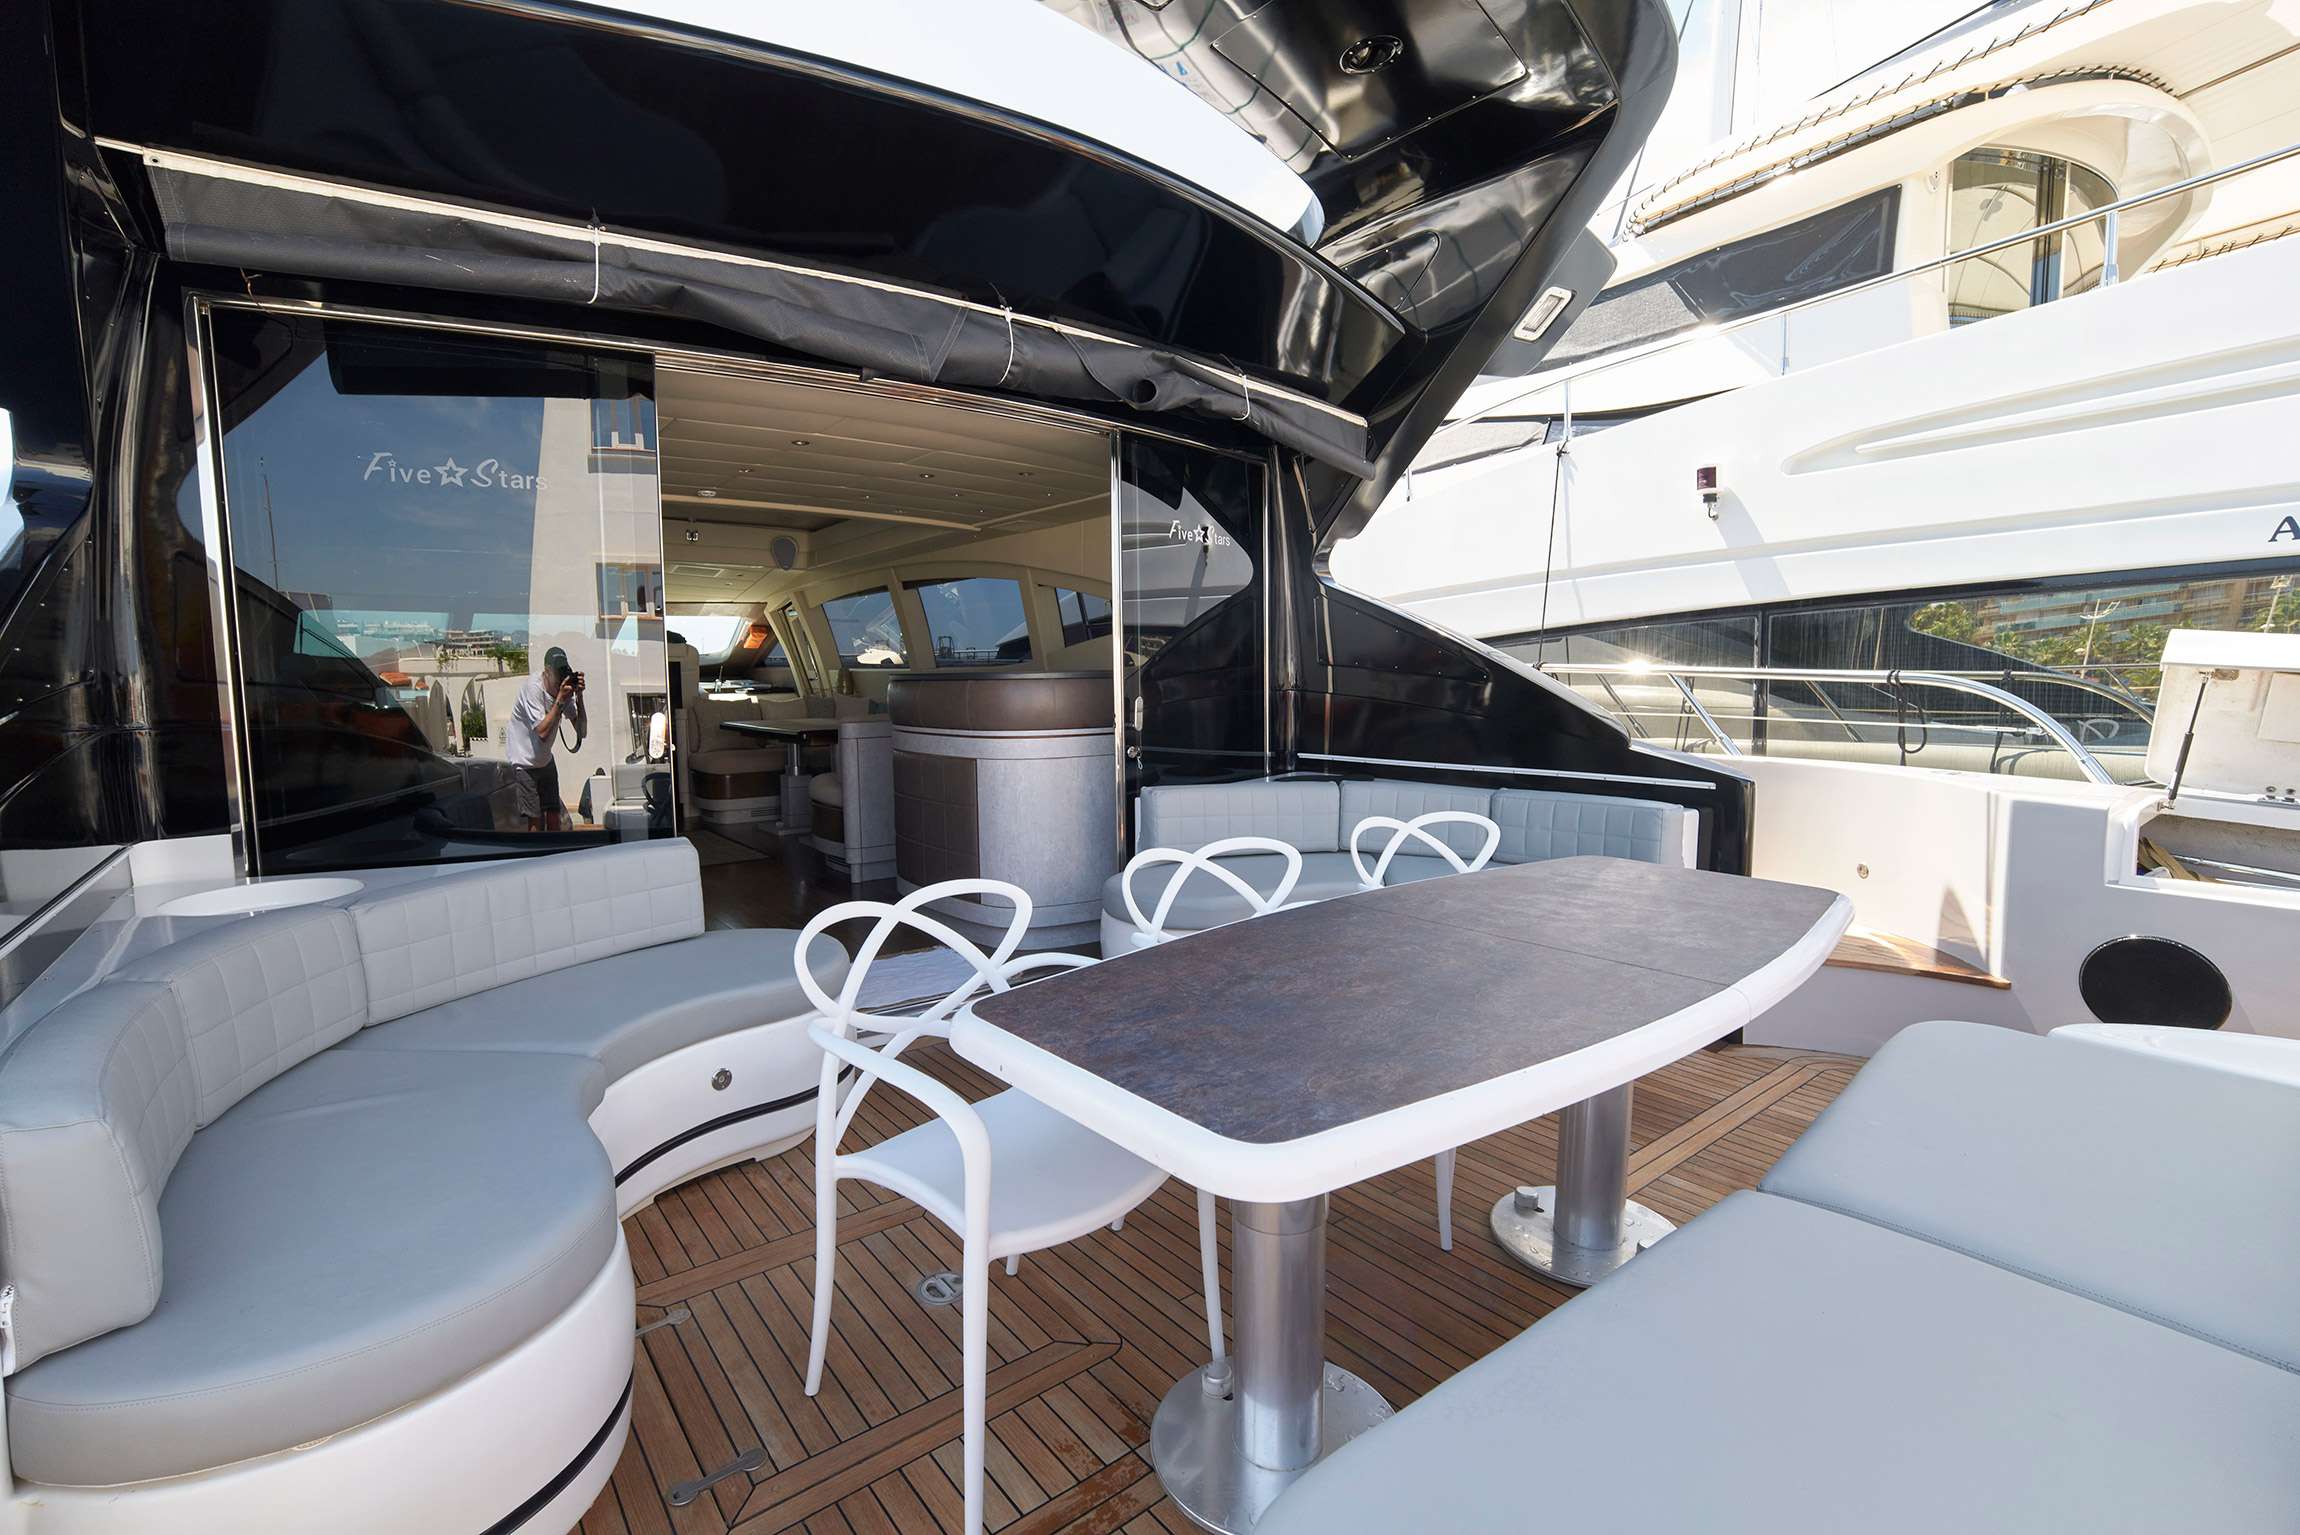 FIVE STARS - Yacht Charter Cala Ratjada & Boat hire in Balearics & Spain 3